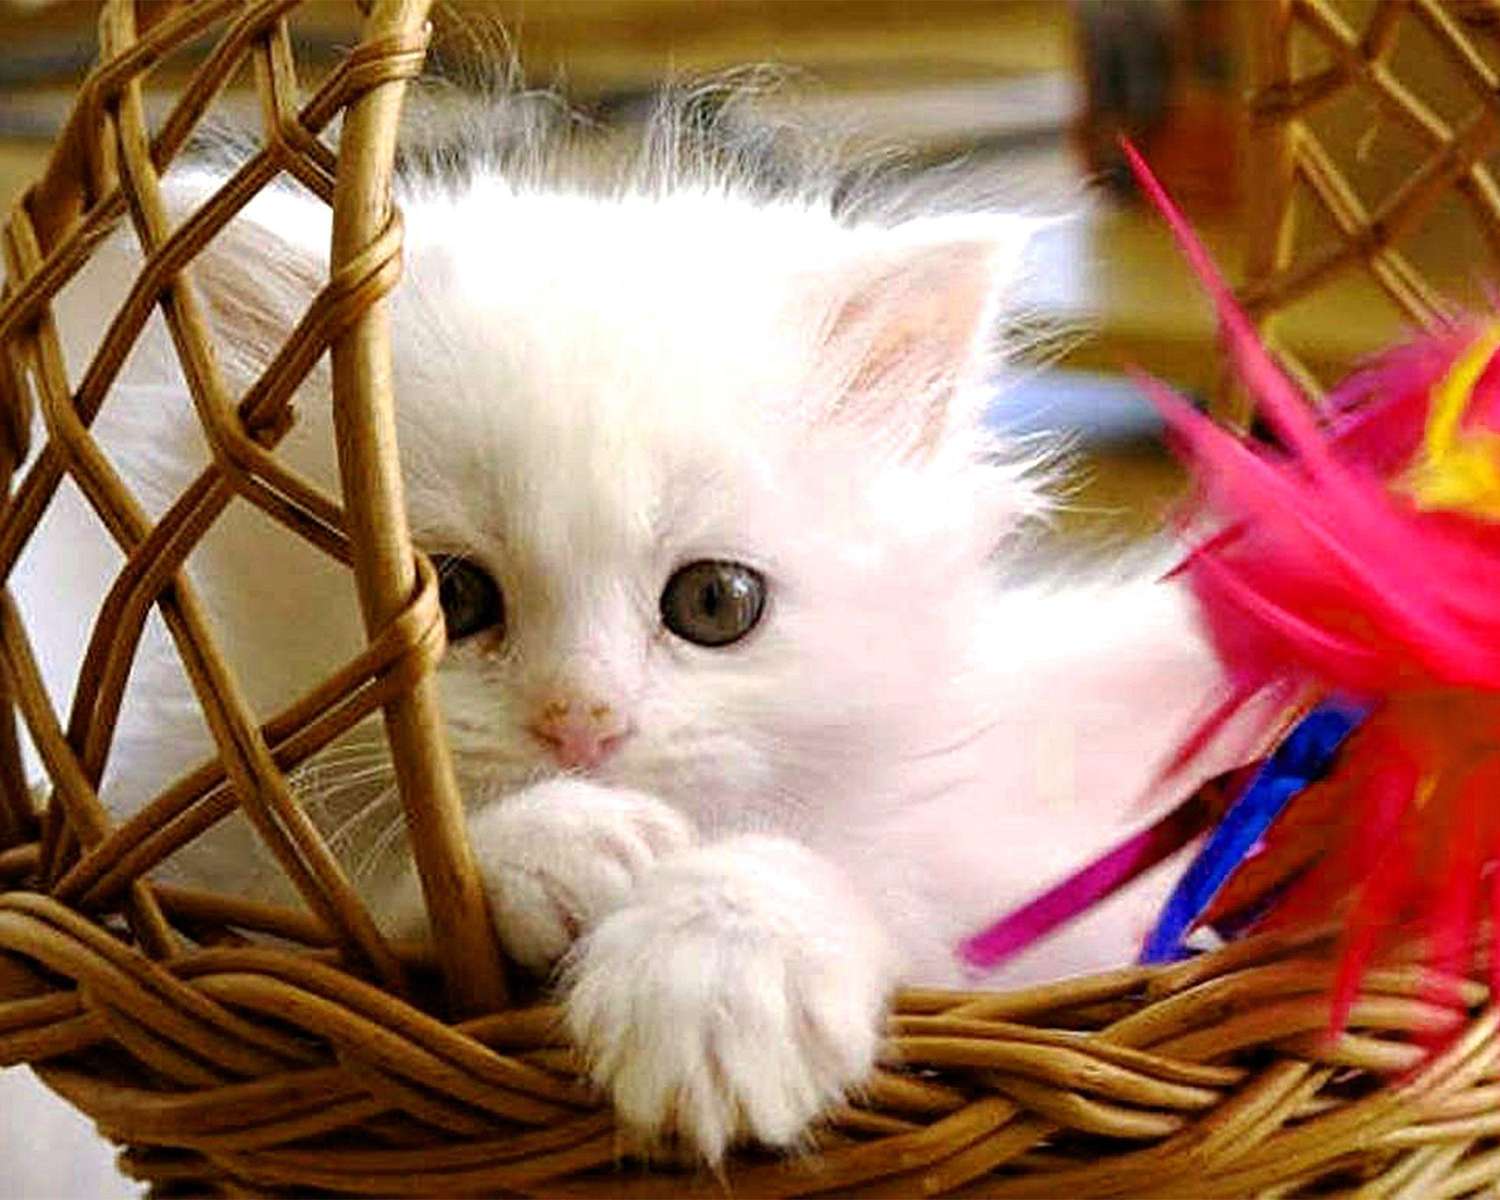 Malé kotě v košíku skládačky online